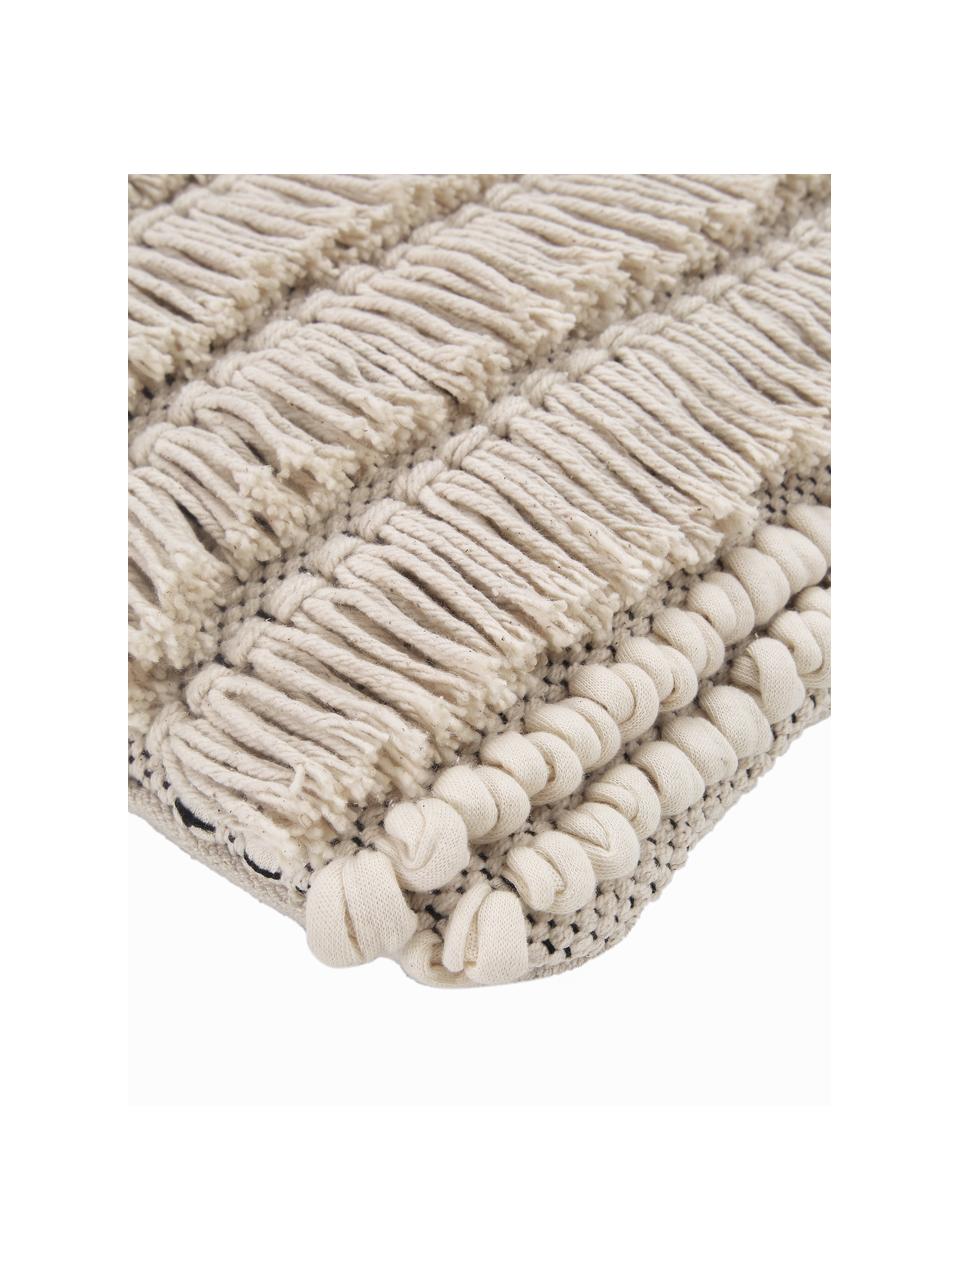 Cojín Tallara, estilo boho, con relleno, Funda: 100% algodón reciclado, Beige claro, An 45 x L 45 cm